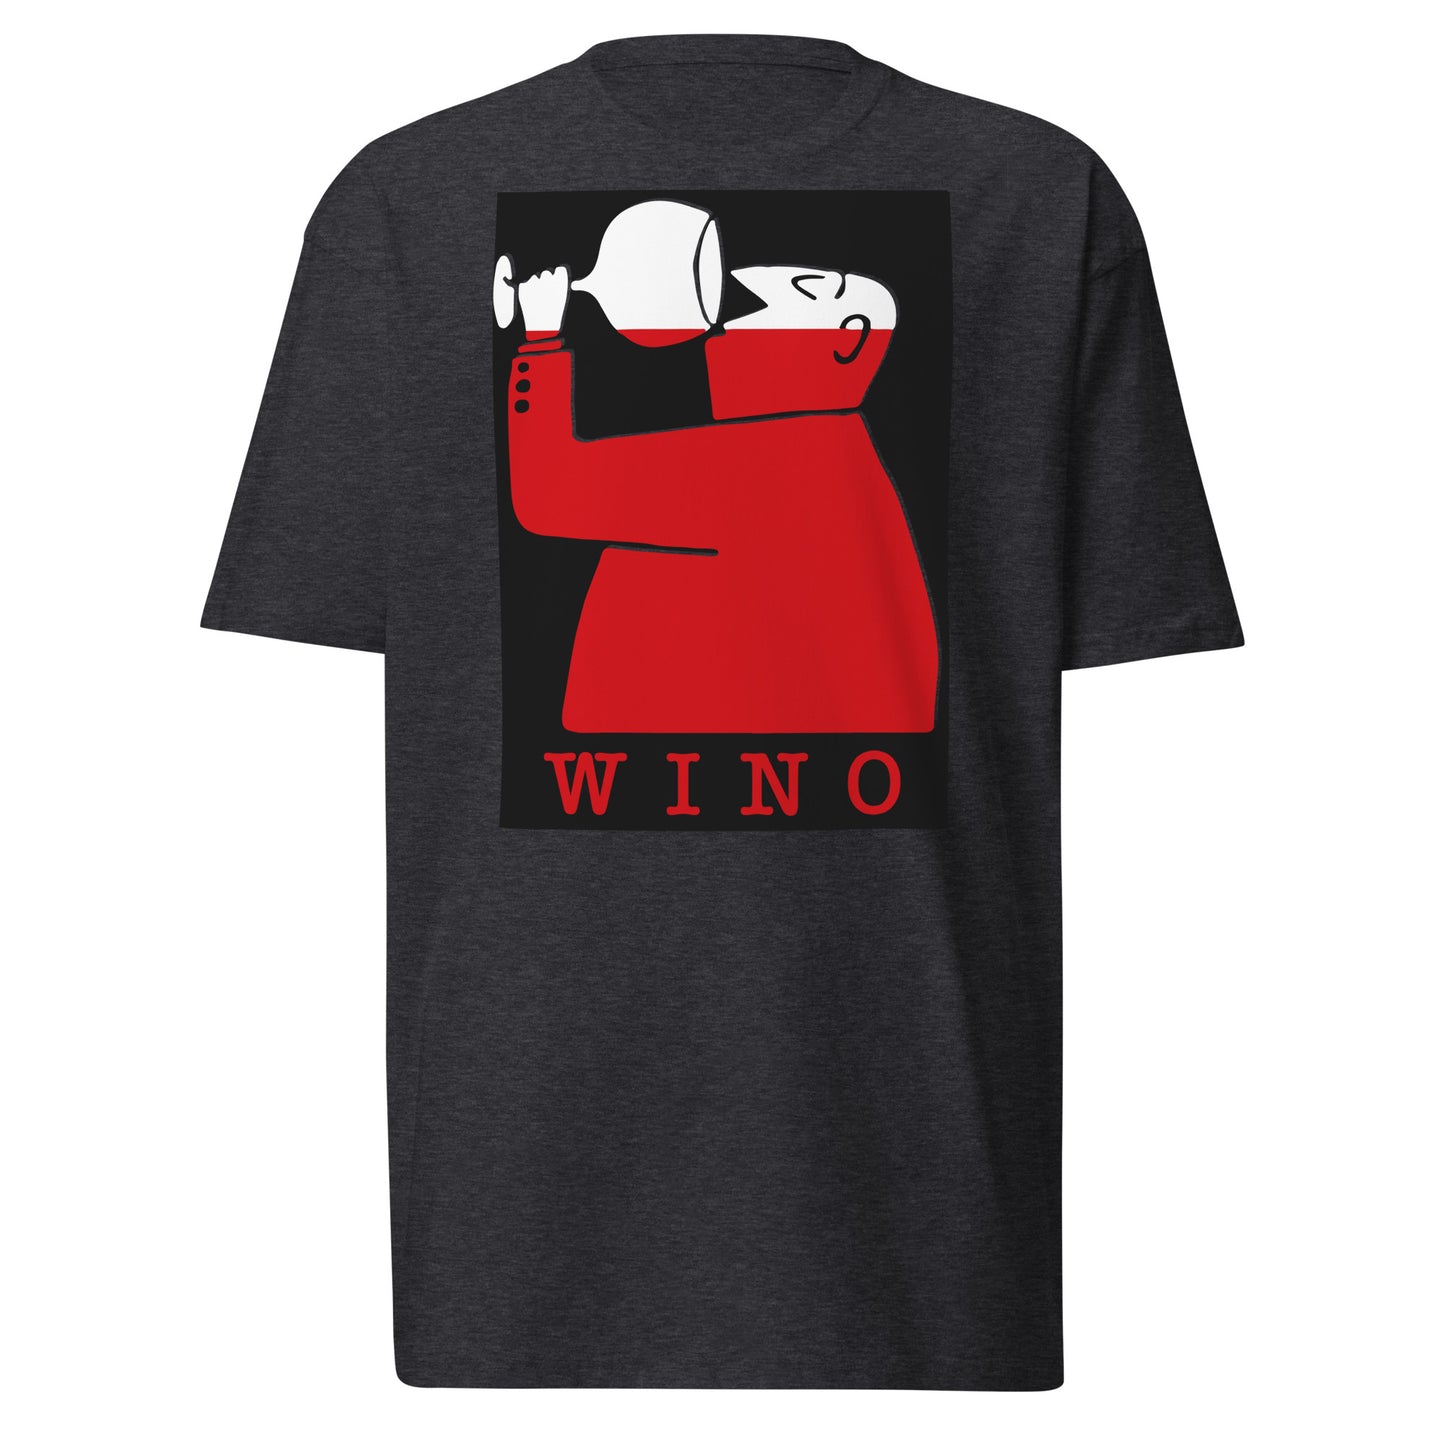 WINO V1 - Men’s premium heavyweight tee